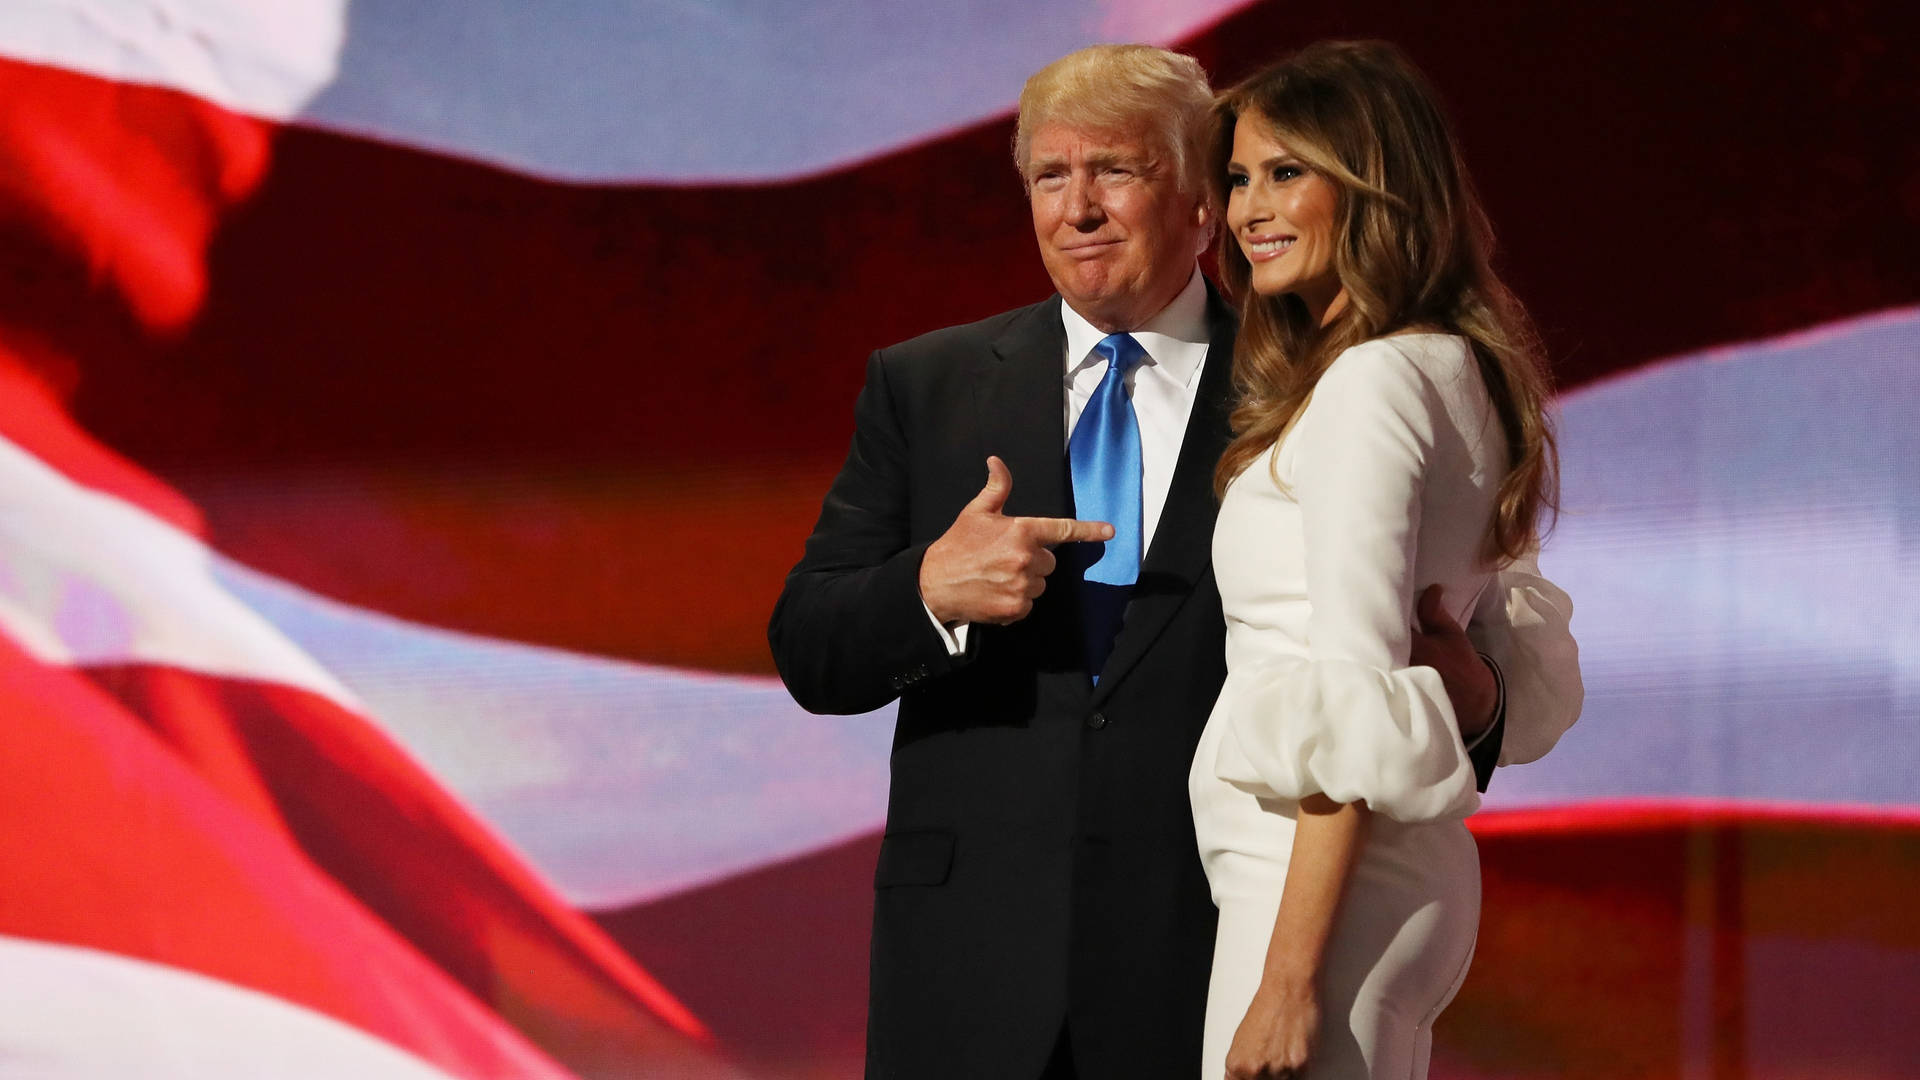 Melania og Donald Trump som baggrundsbilleder. Wallpaper